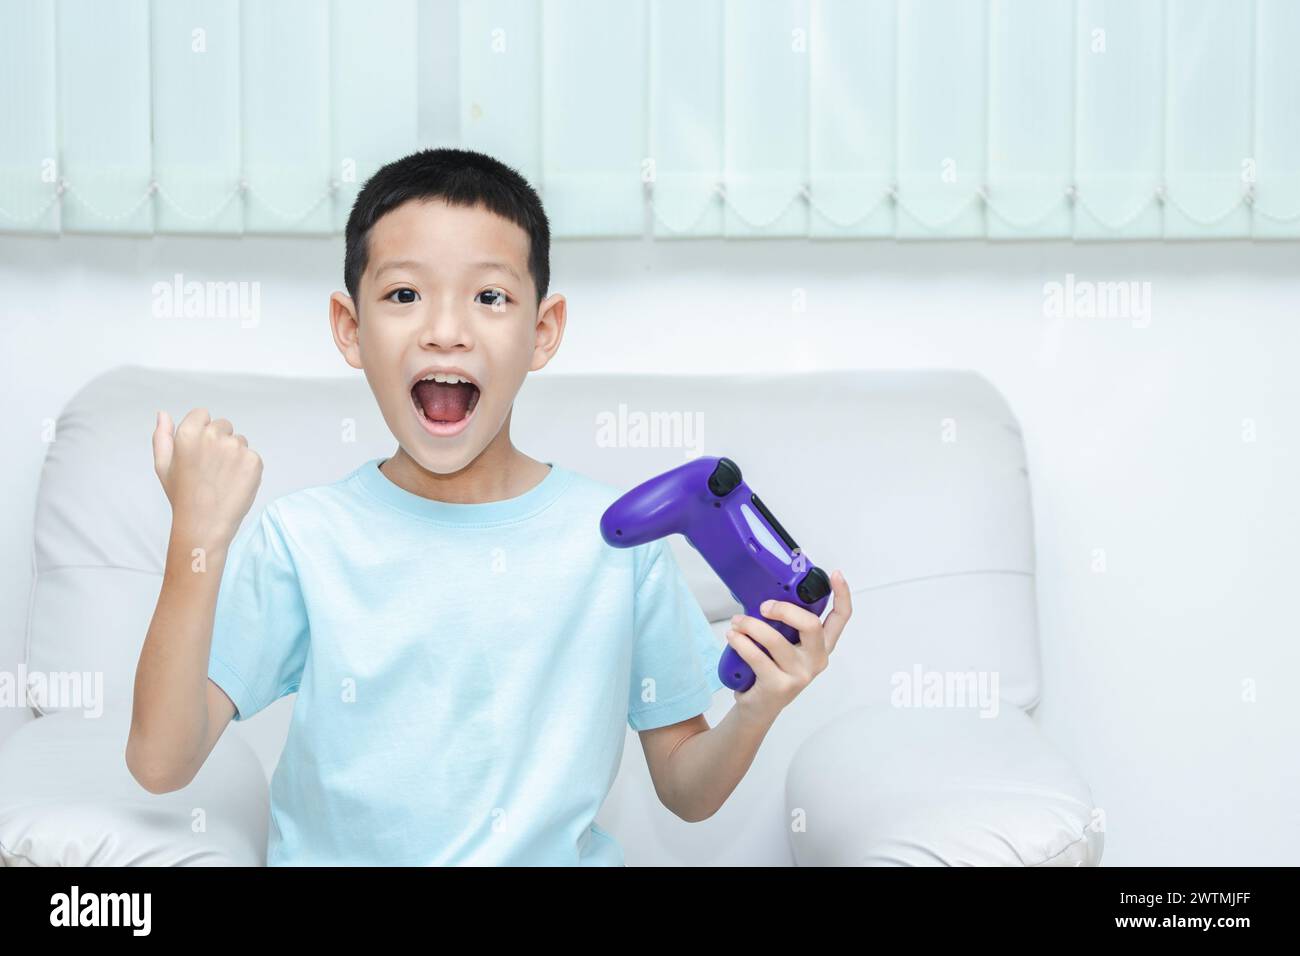 Petit garçon asiatique jouant à un jeu vidéo. plan d'un enfant tenant une manette de jeu. Asian Boy est ravi parce qu'il a gagné et lève les mains joyeusement. Banque D'Images